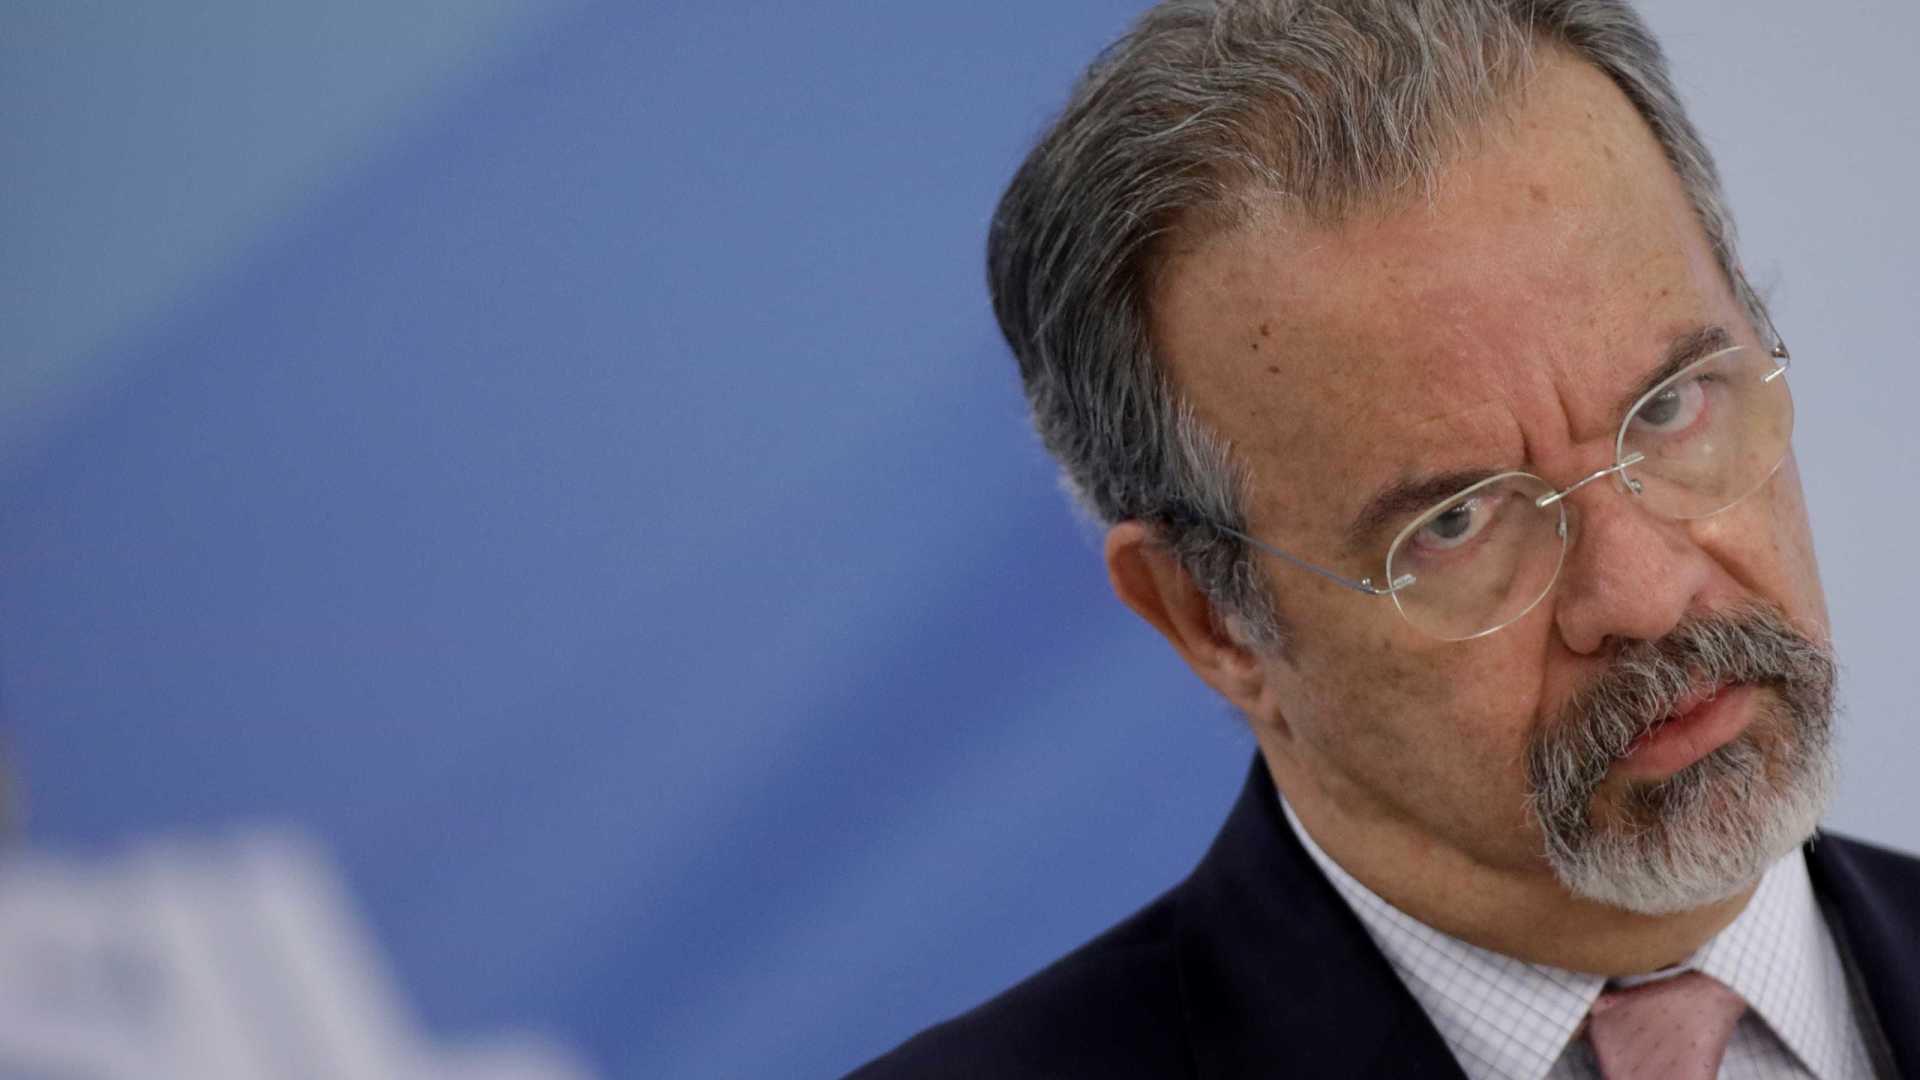 Candidatos terão 25 seguranças; família de Bolsonaro pede proteção